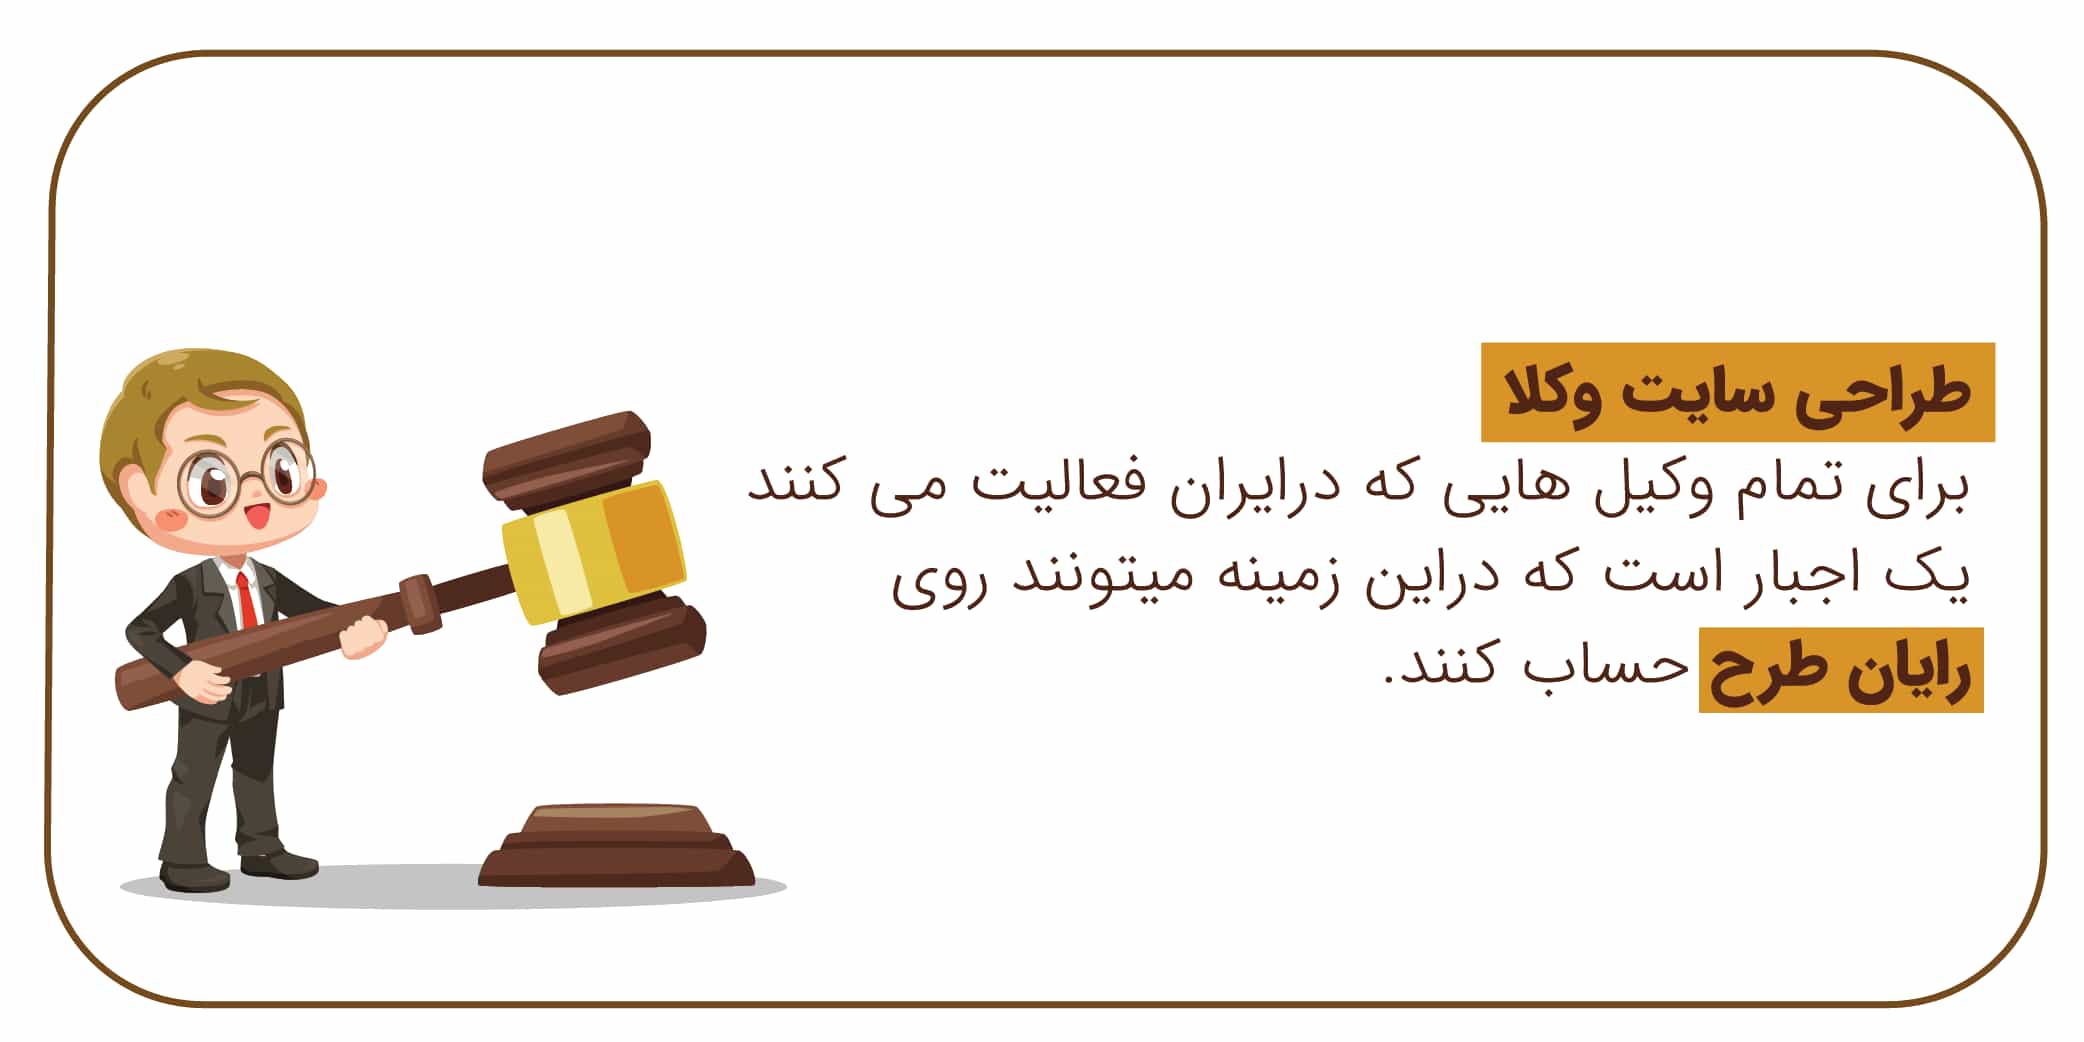 طراحی سایت وکلا در ایران توسط رایان طرح